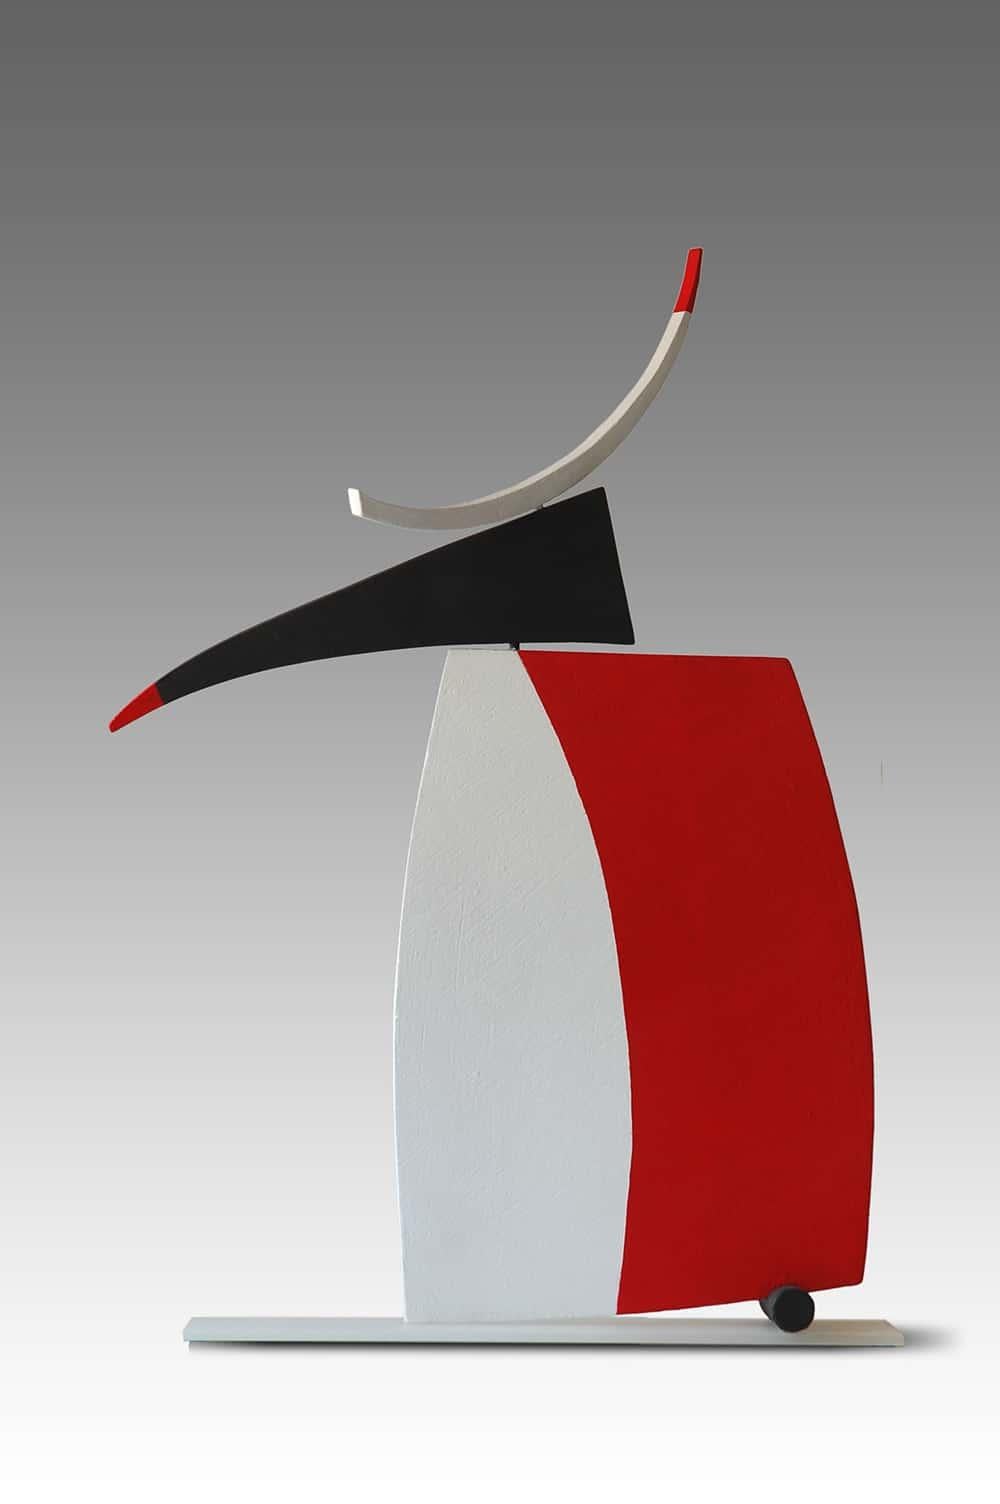 Ignite est une sculpture unique en argile cuite construite, peinte et montée sur verre de l'artiste contemporaine Patricia VOLK. Ses dimensions sont de 63 × 51 × 8 cm (24,8 × 20,1 × 3,1 in). 
La sculpture est signée et accompagnée d'un certificat